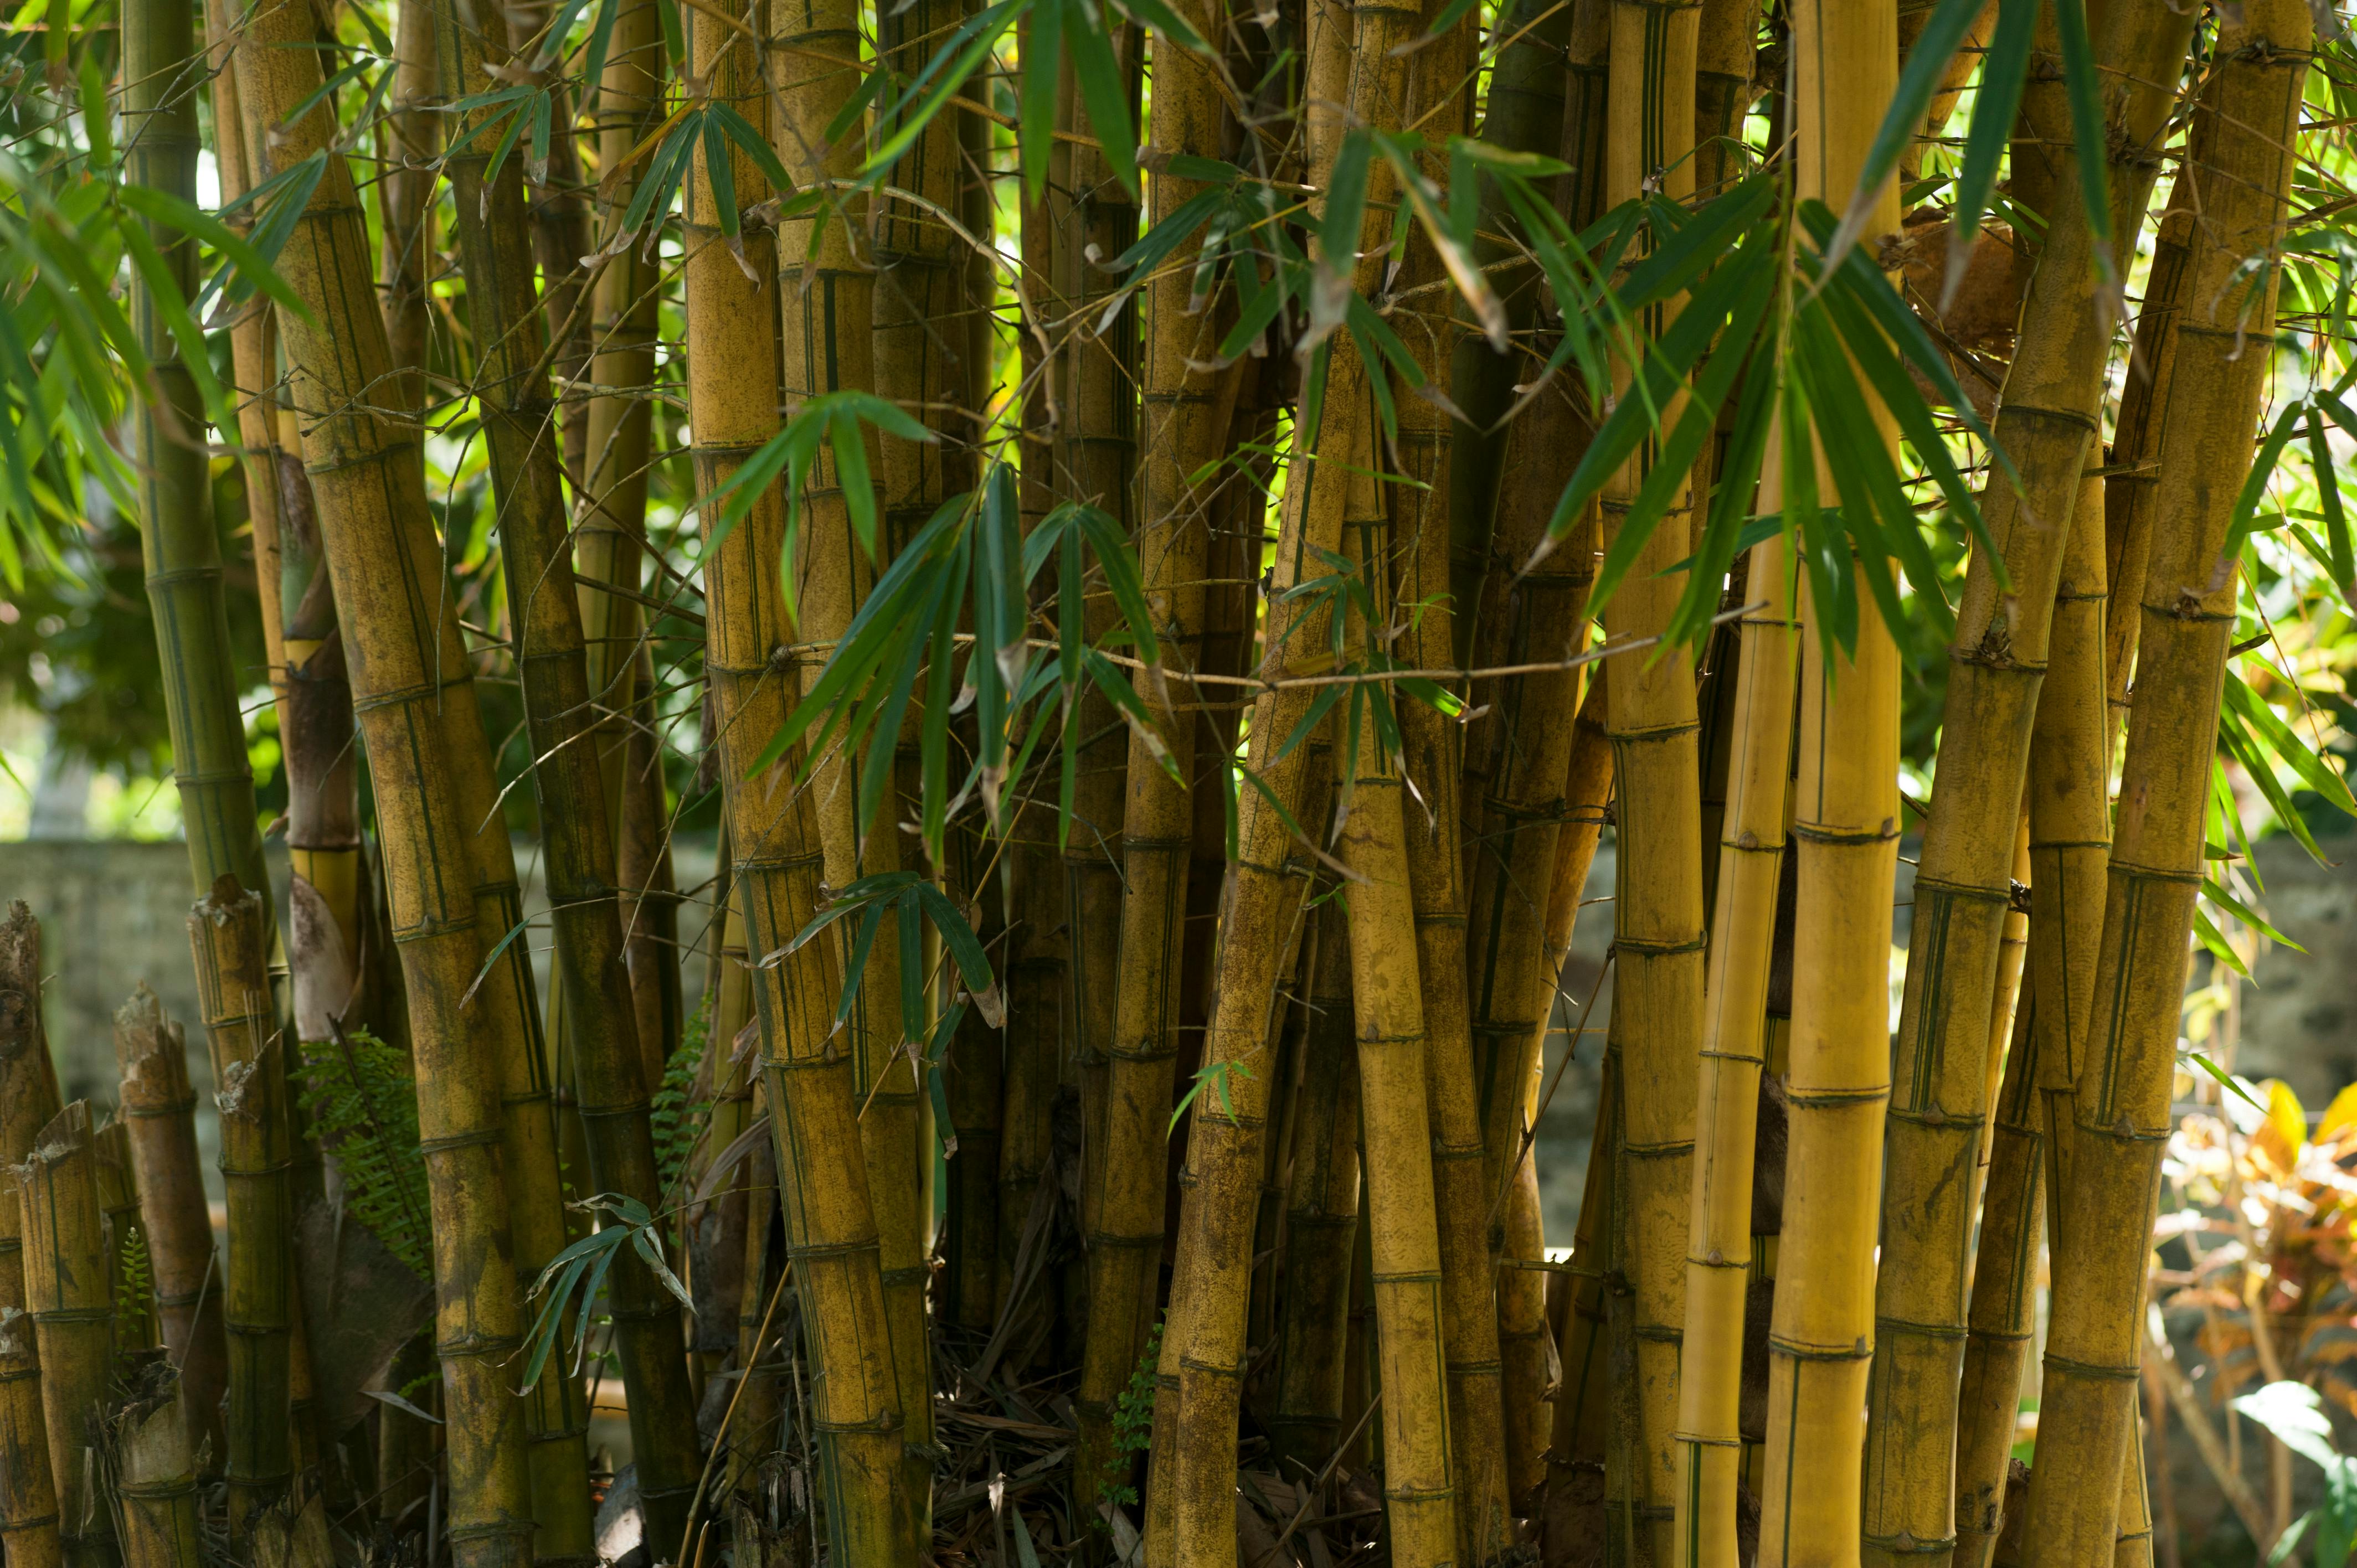  Bamboo  Tree   Free Stock Photo